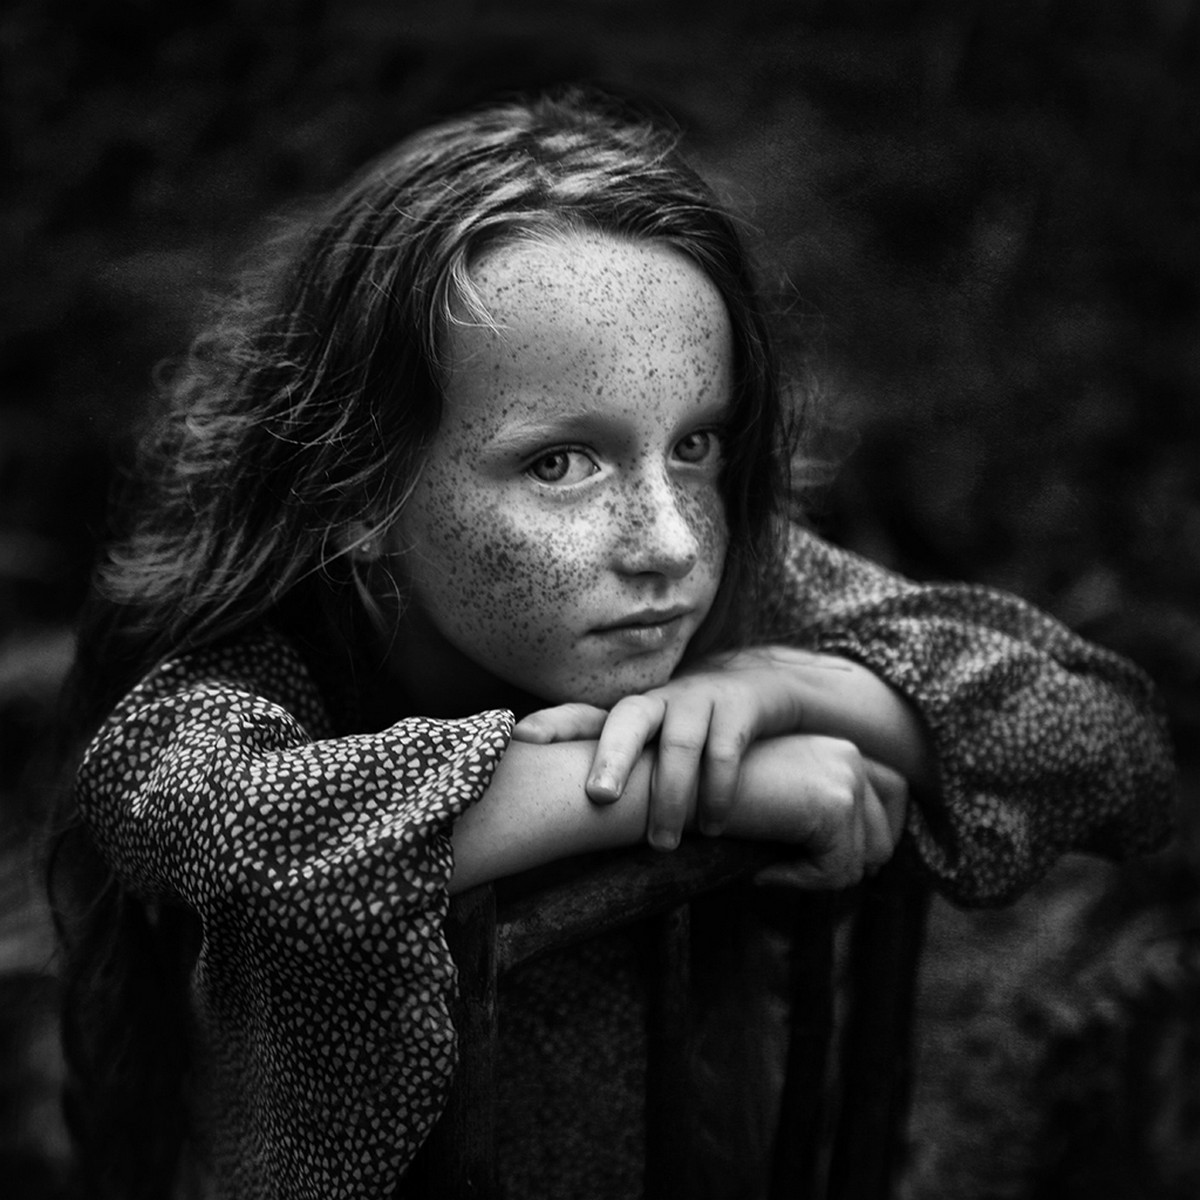 победители конкурса черно-белой детской фотографии 2018 5